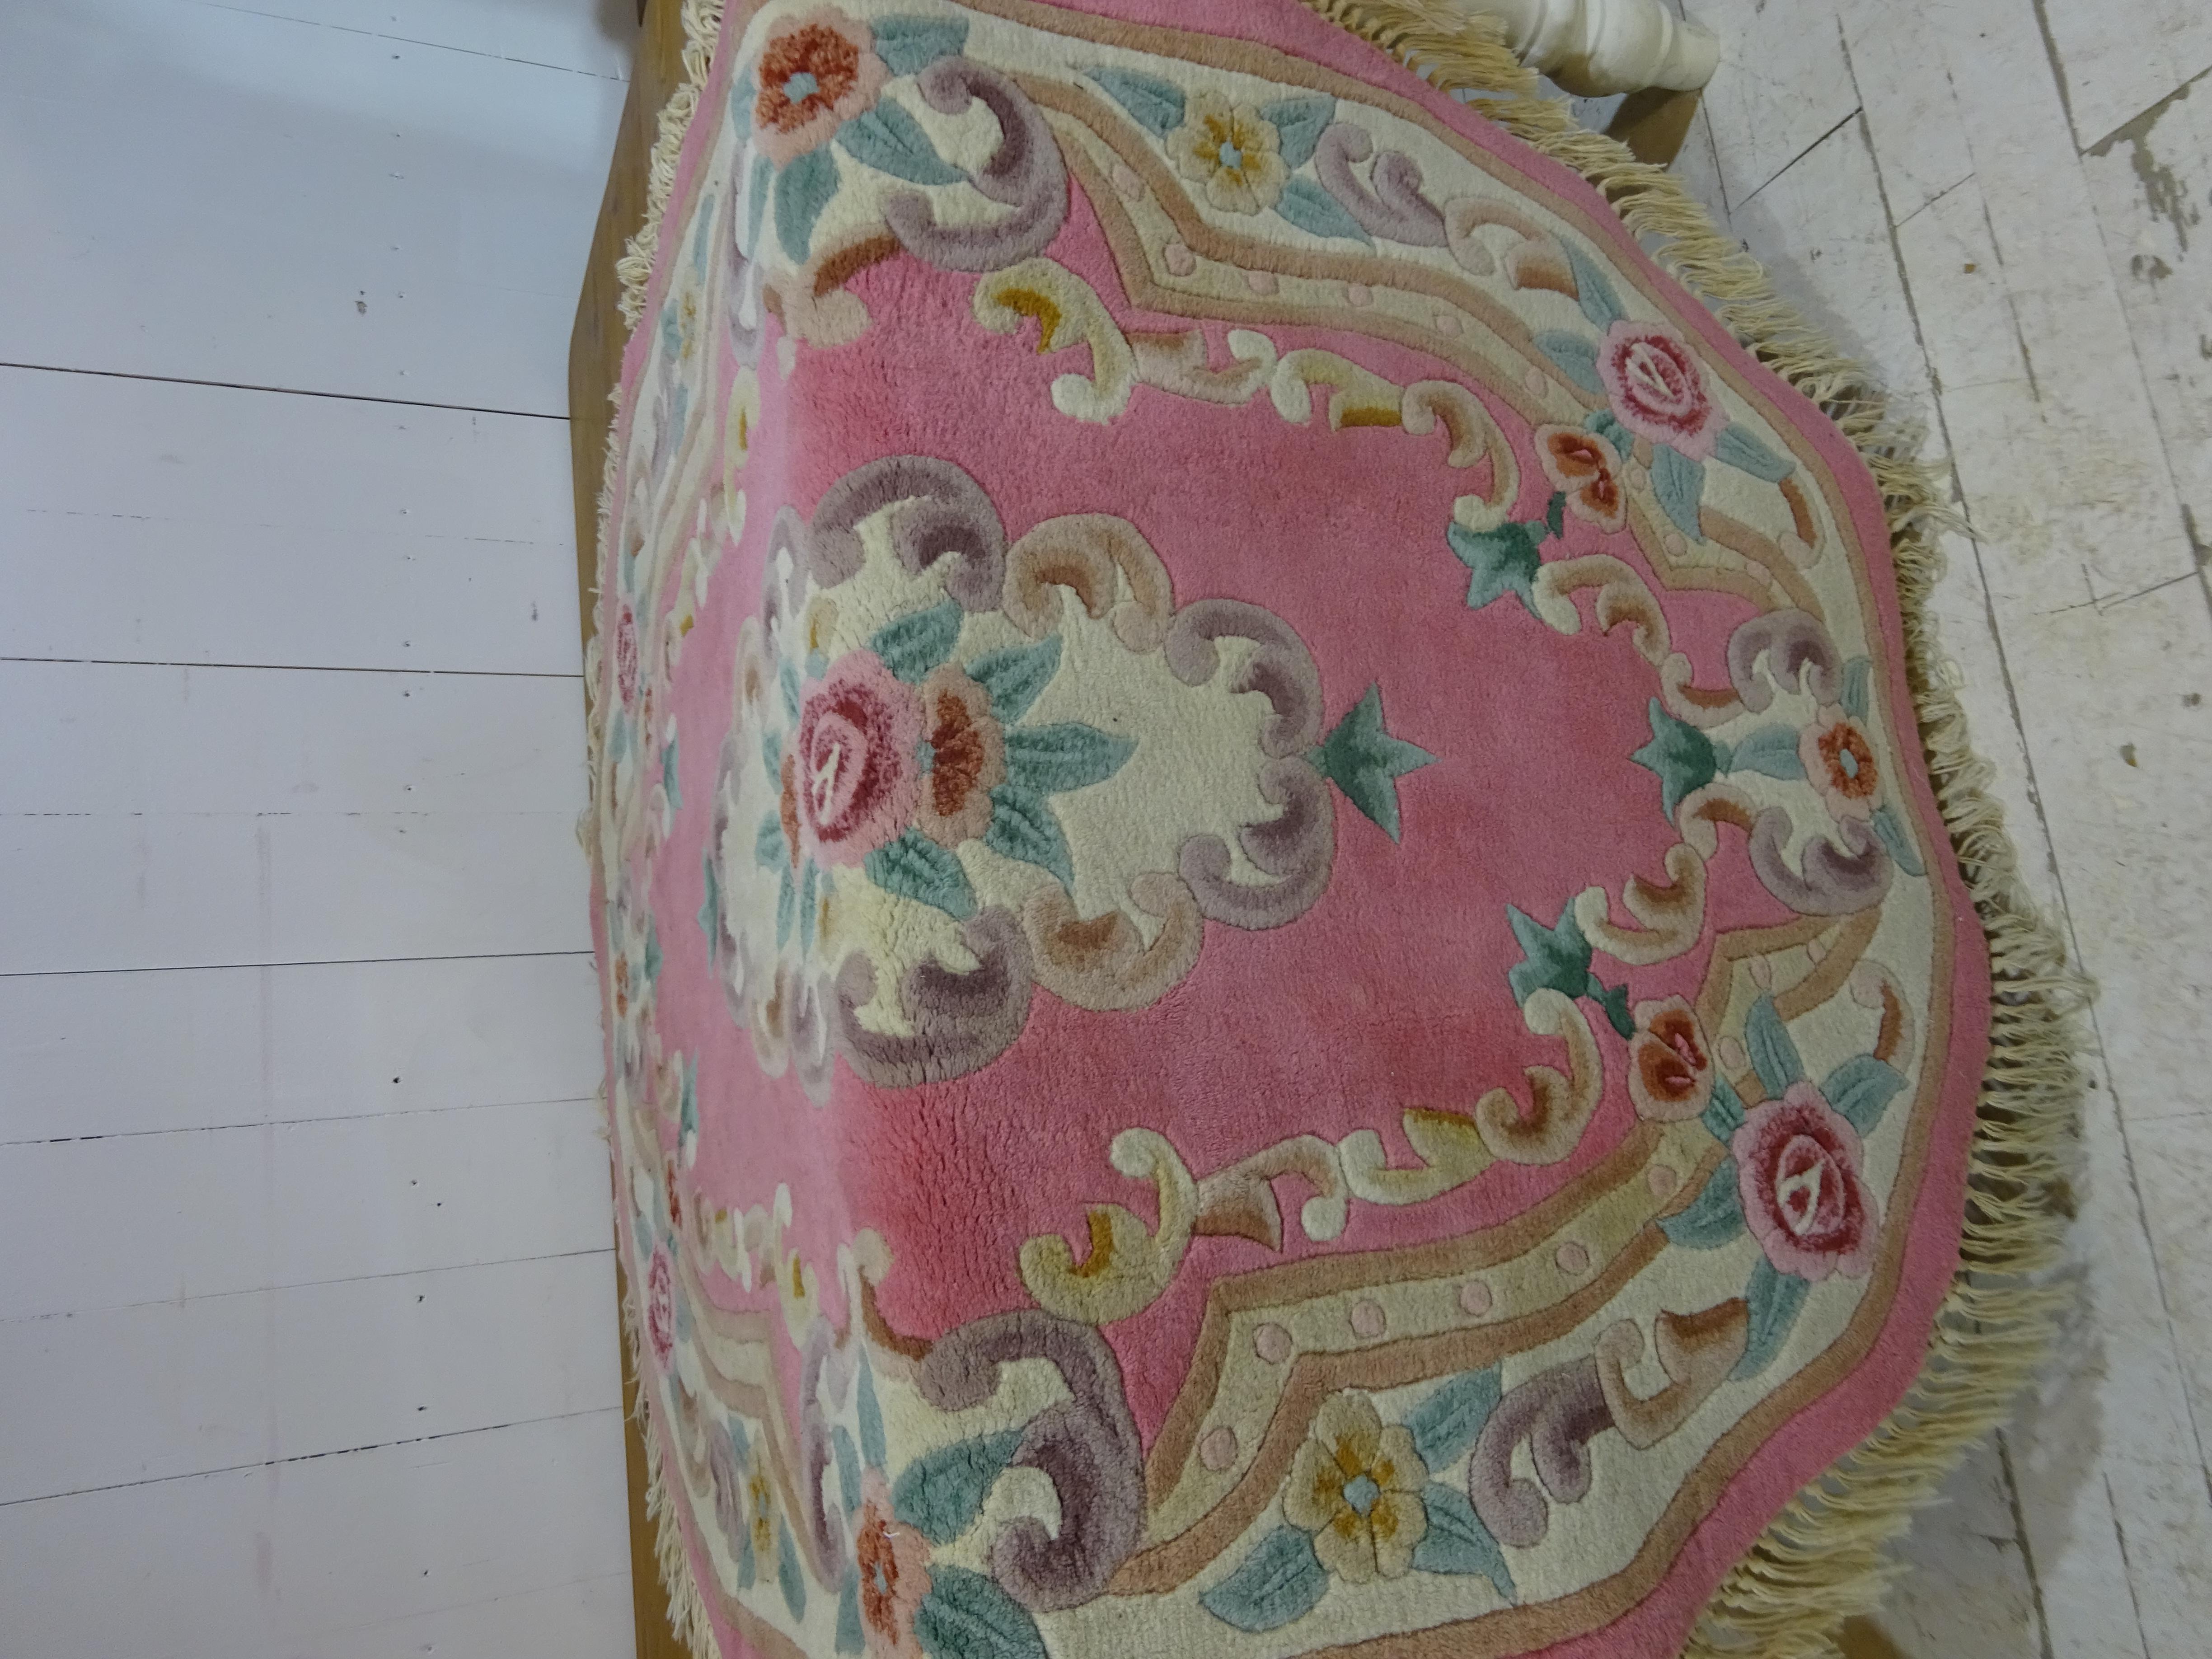 Dieser Teppich war einer von über 20 Teppichen, die Mitte der 1920er Jahre aus China importiert wurden und sich seither in derselben Familie befinden. Es ist uns gelungen, die meisten dieser fabelhaften Teppiche zu finden, die ideal für jeden Raum